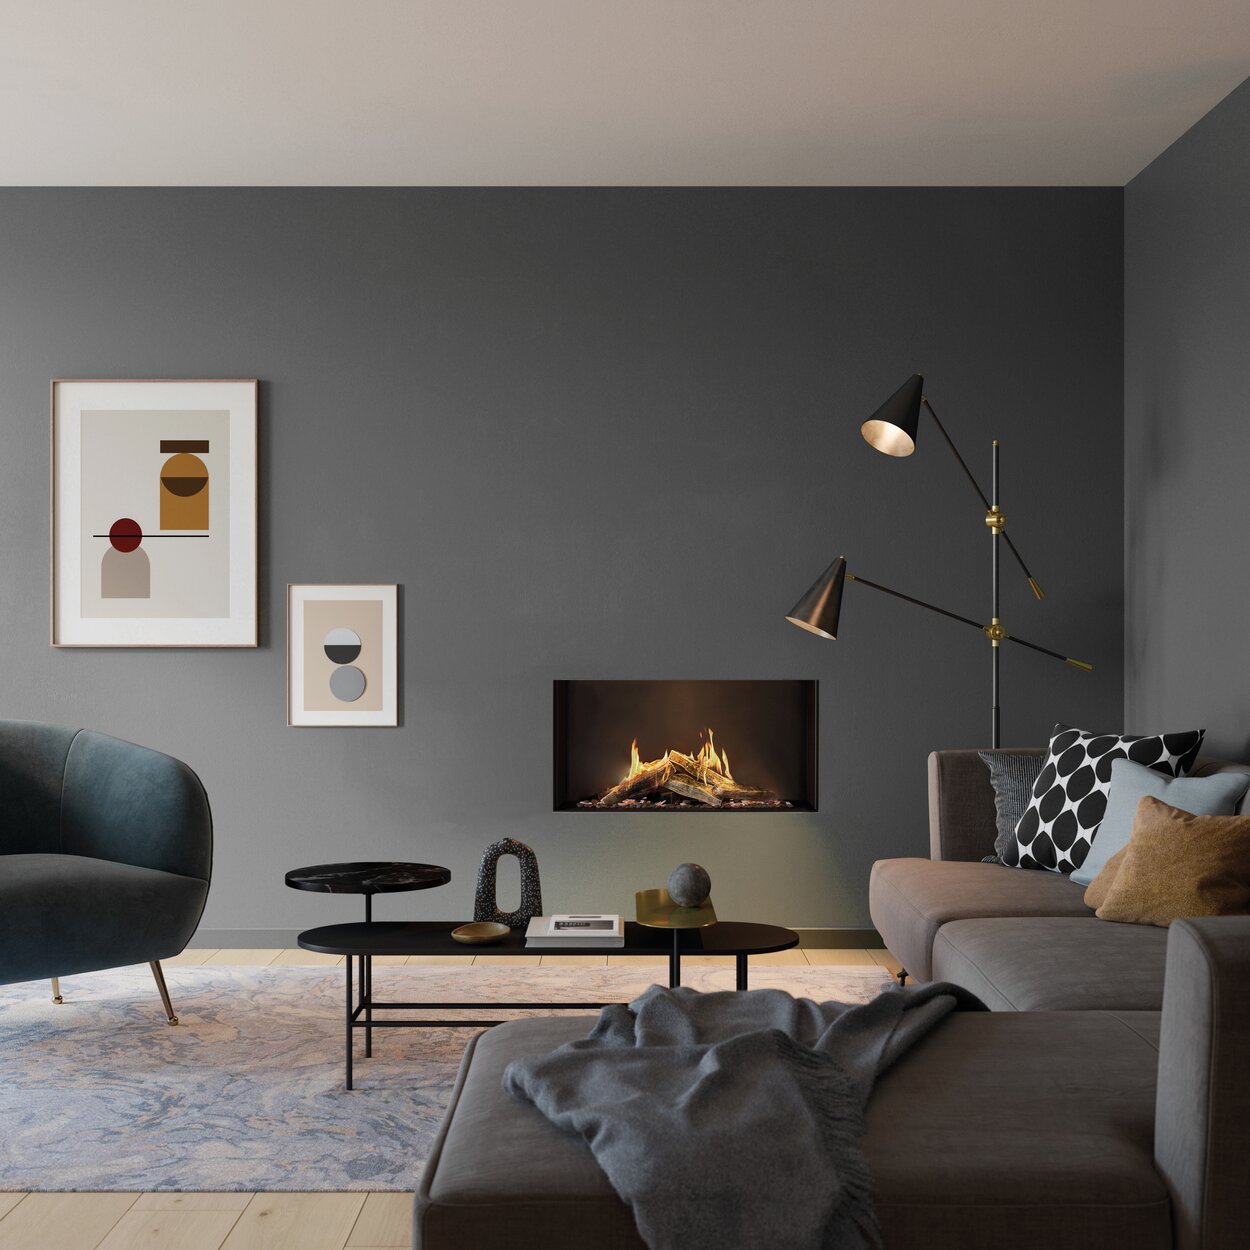 Cheminée à gaz VISIO 90 F comme cheminée frontale dans un mur vert sauge entouré de meubles assortis dans un salon au style minimaliste